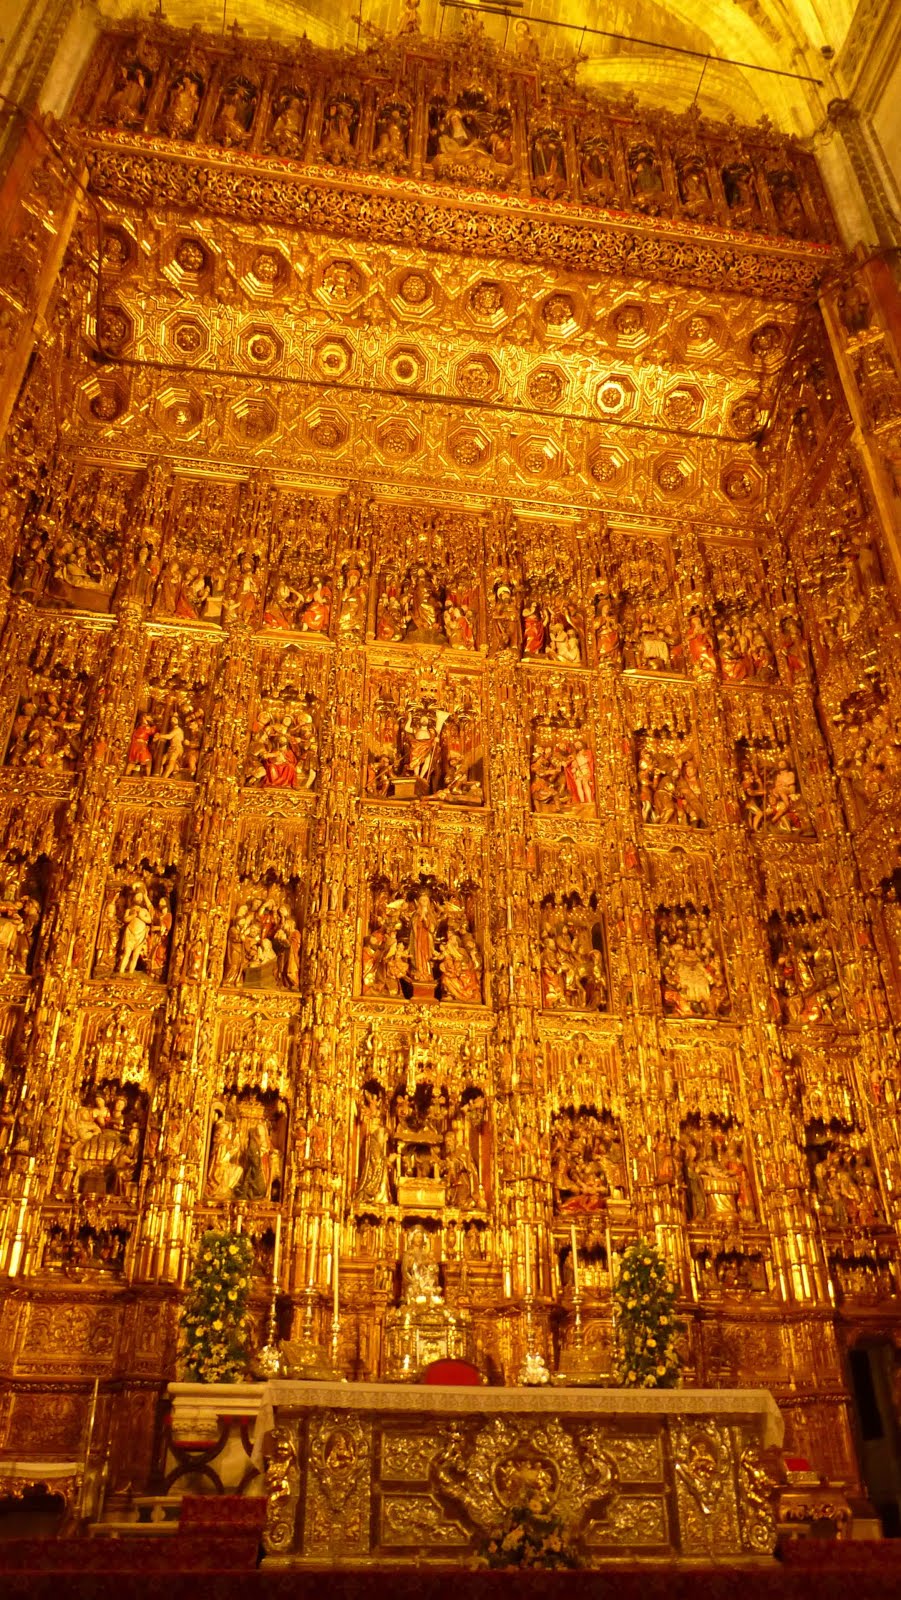 Le retable doré de la Cathédrale de Séville